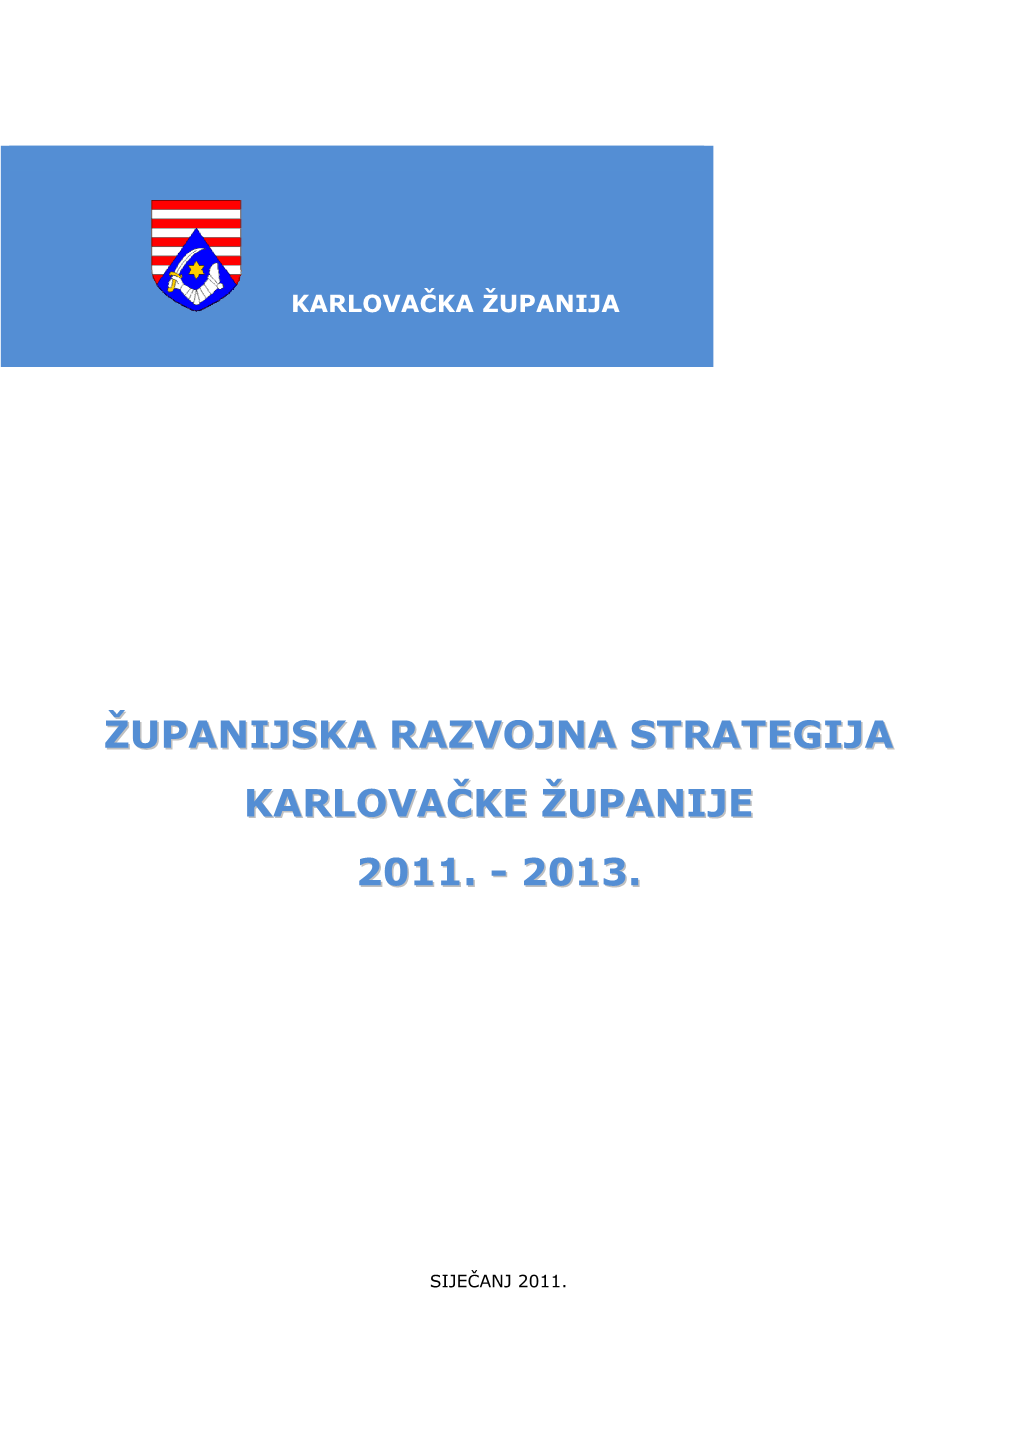 Županijska Razvojna Strategija Karlovačke Županije 2011. - 2013